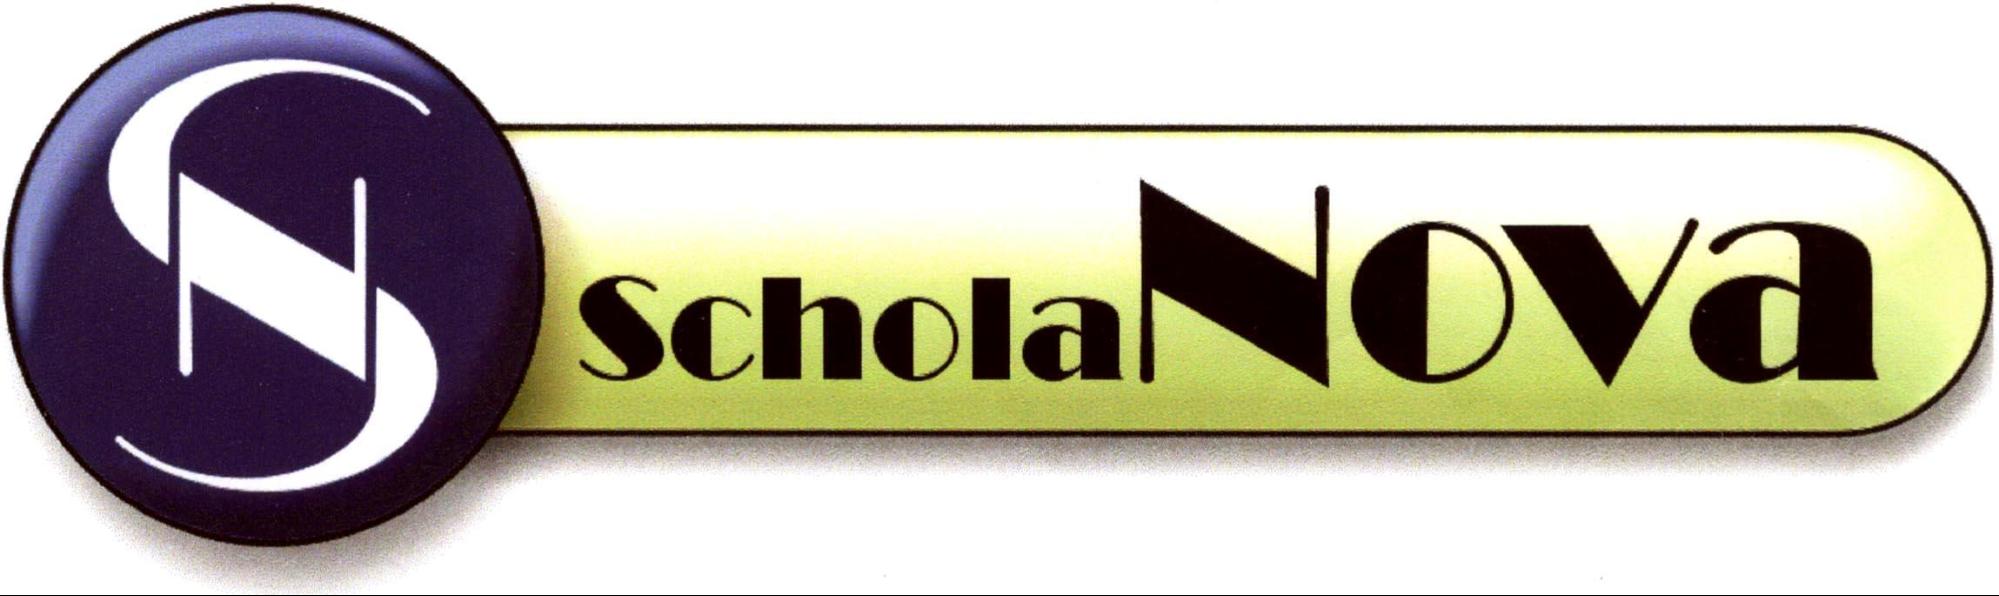 Schola Nova Logo gross (c) Schola Nova Pfarrgemeinde St. Donatus Aachen